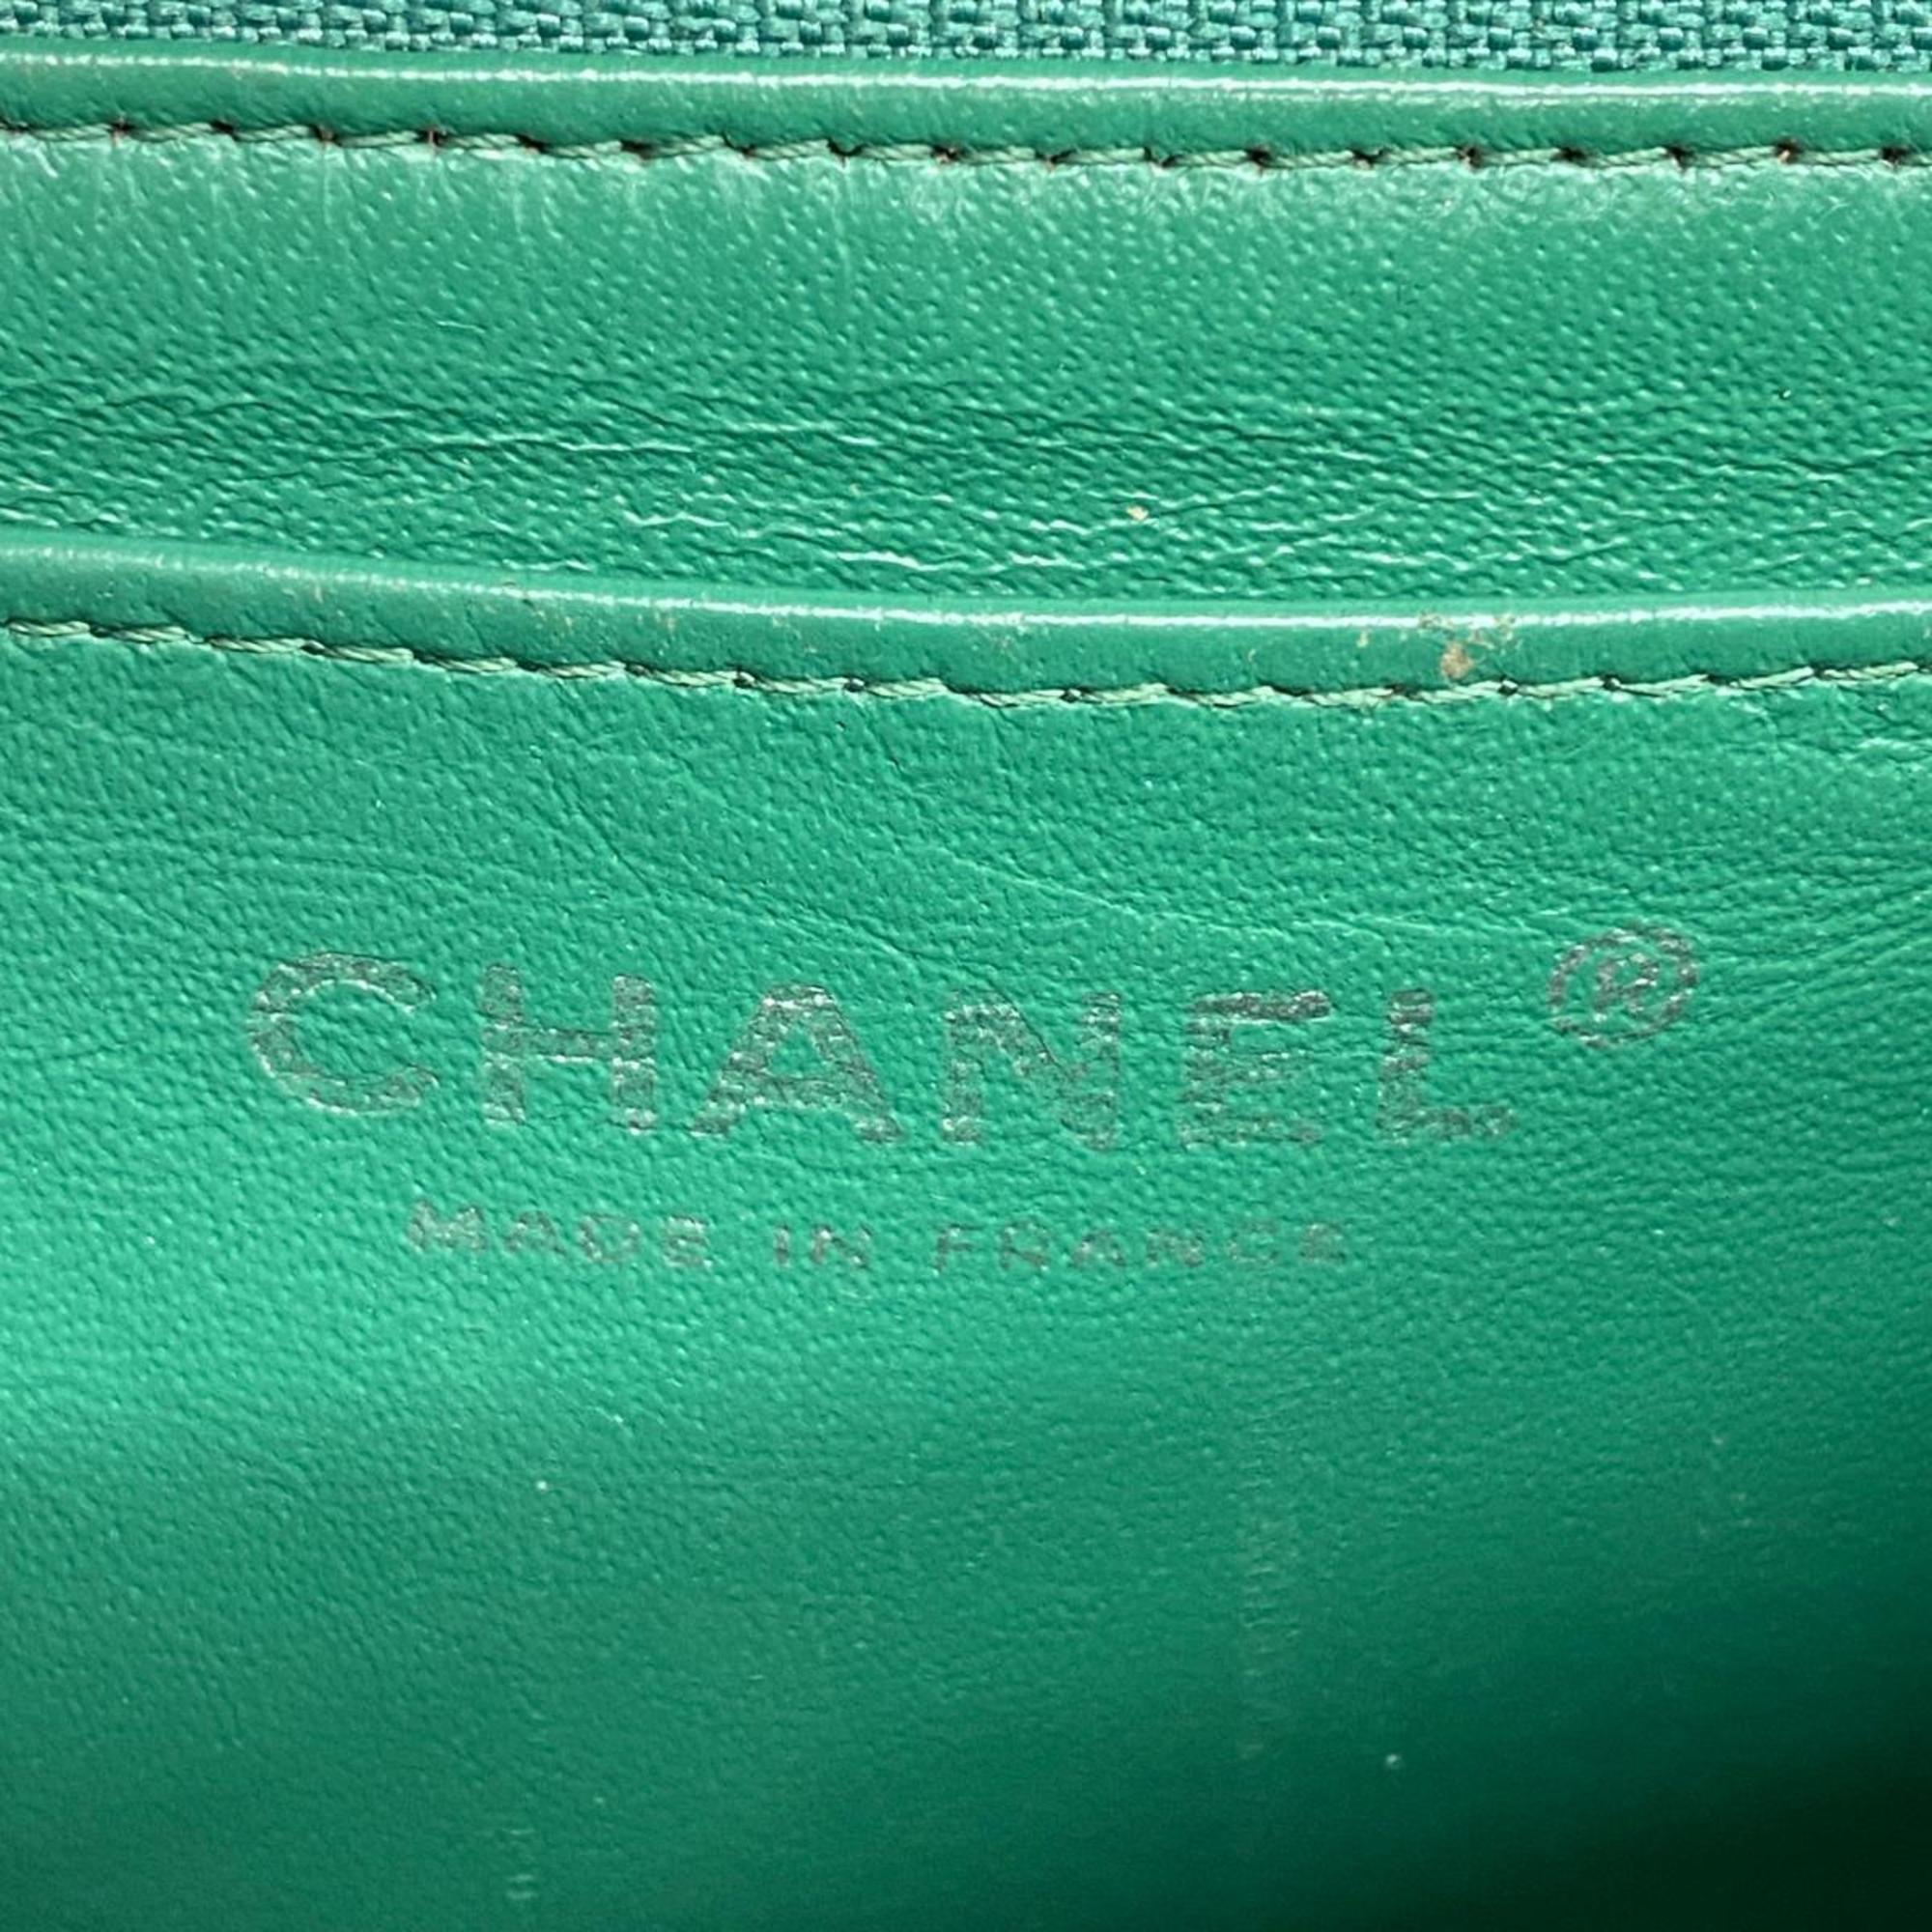 シャネル(Chanel) シャネル ショルダーバッグ マトラッセ パンチング Wチェーン ラムスキン グリーン   レディース